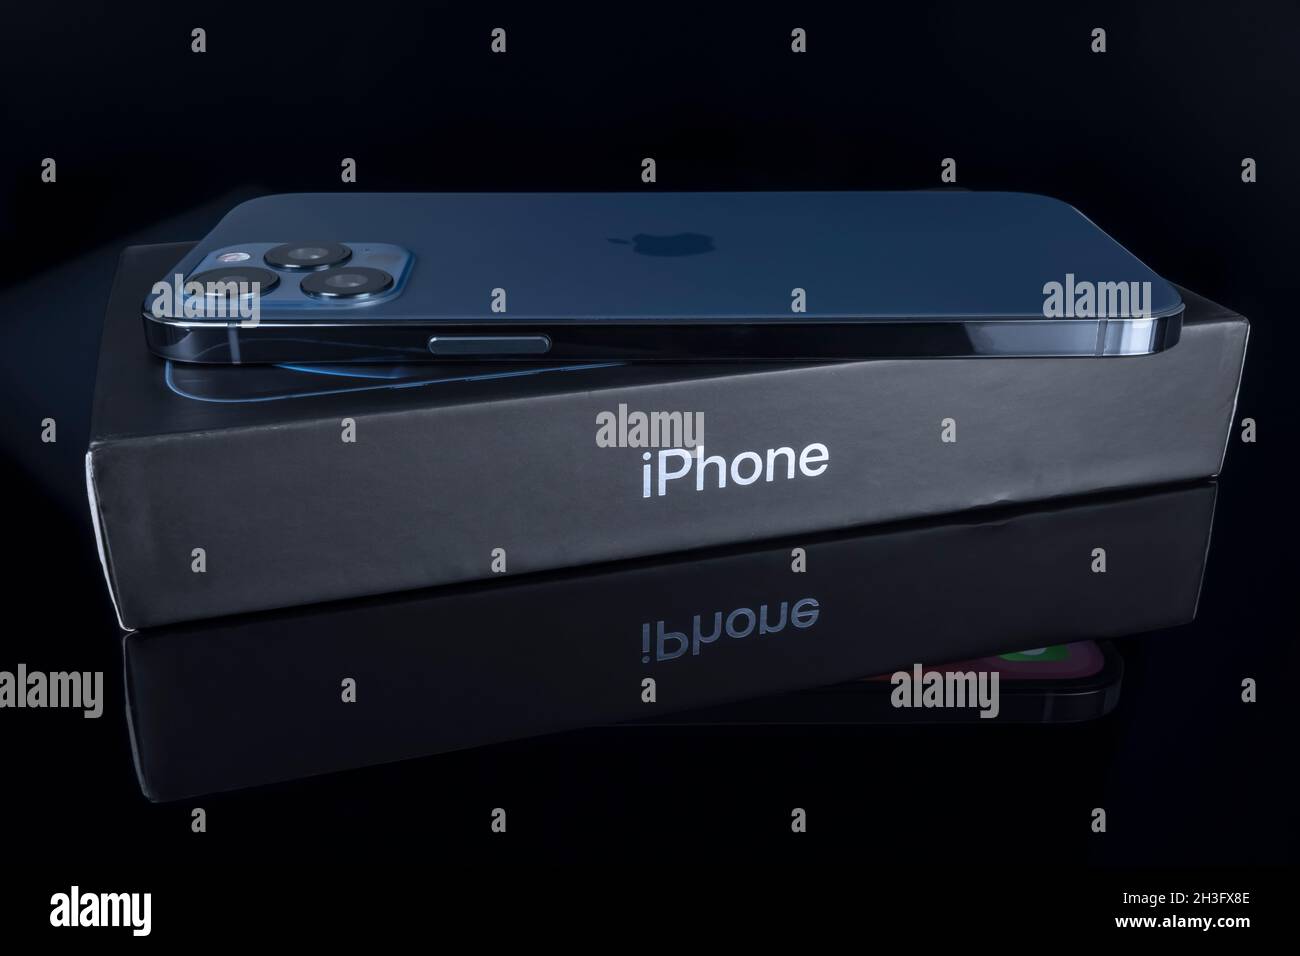 Galati, Romania - 14 ottobre 2021: Studio girato di nuovo Apple iPhone 12 Pro Max colore blu su iPhone box. Isolare su sfondo nero. Illustrativa e Foto Stock